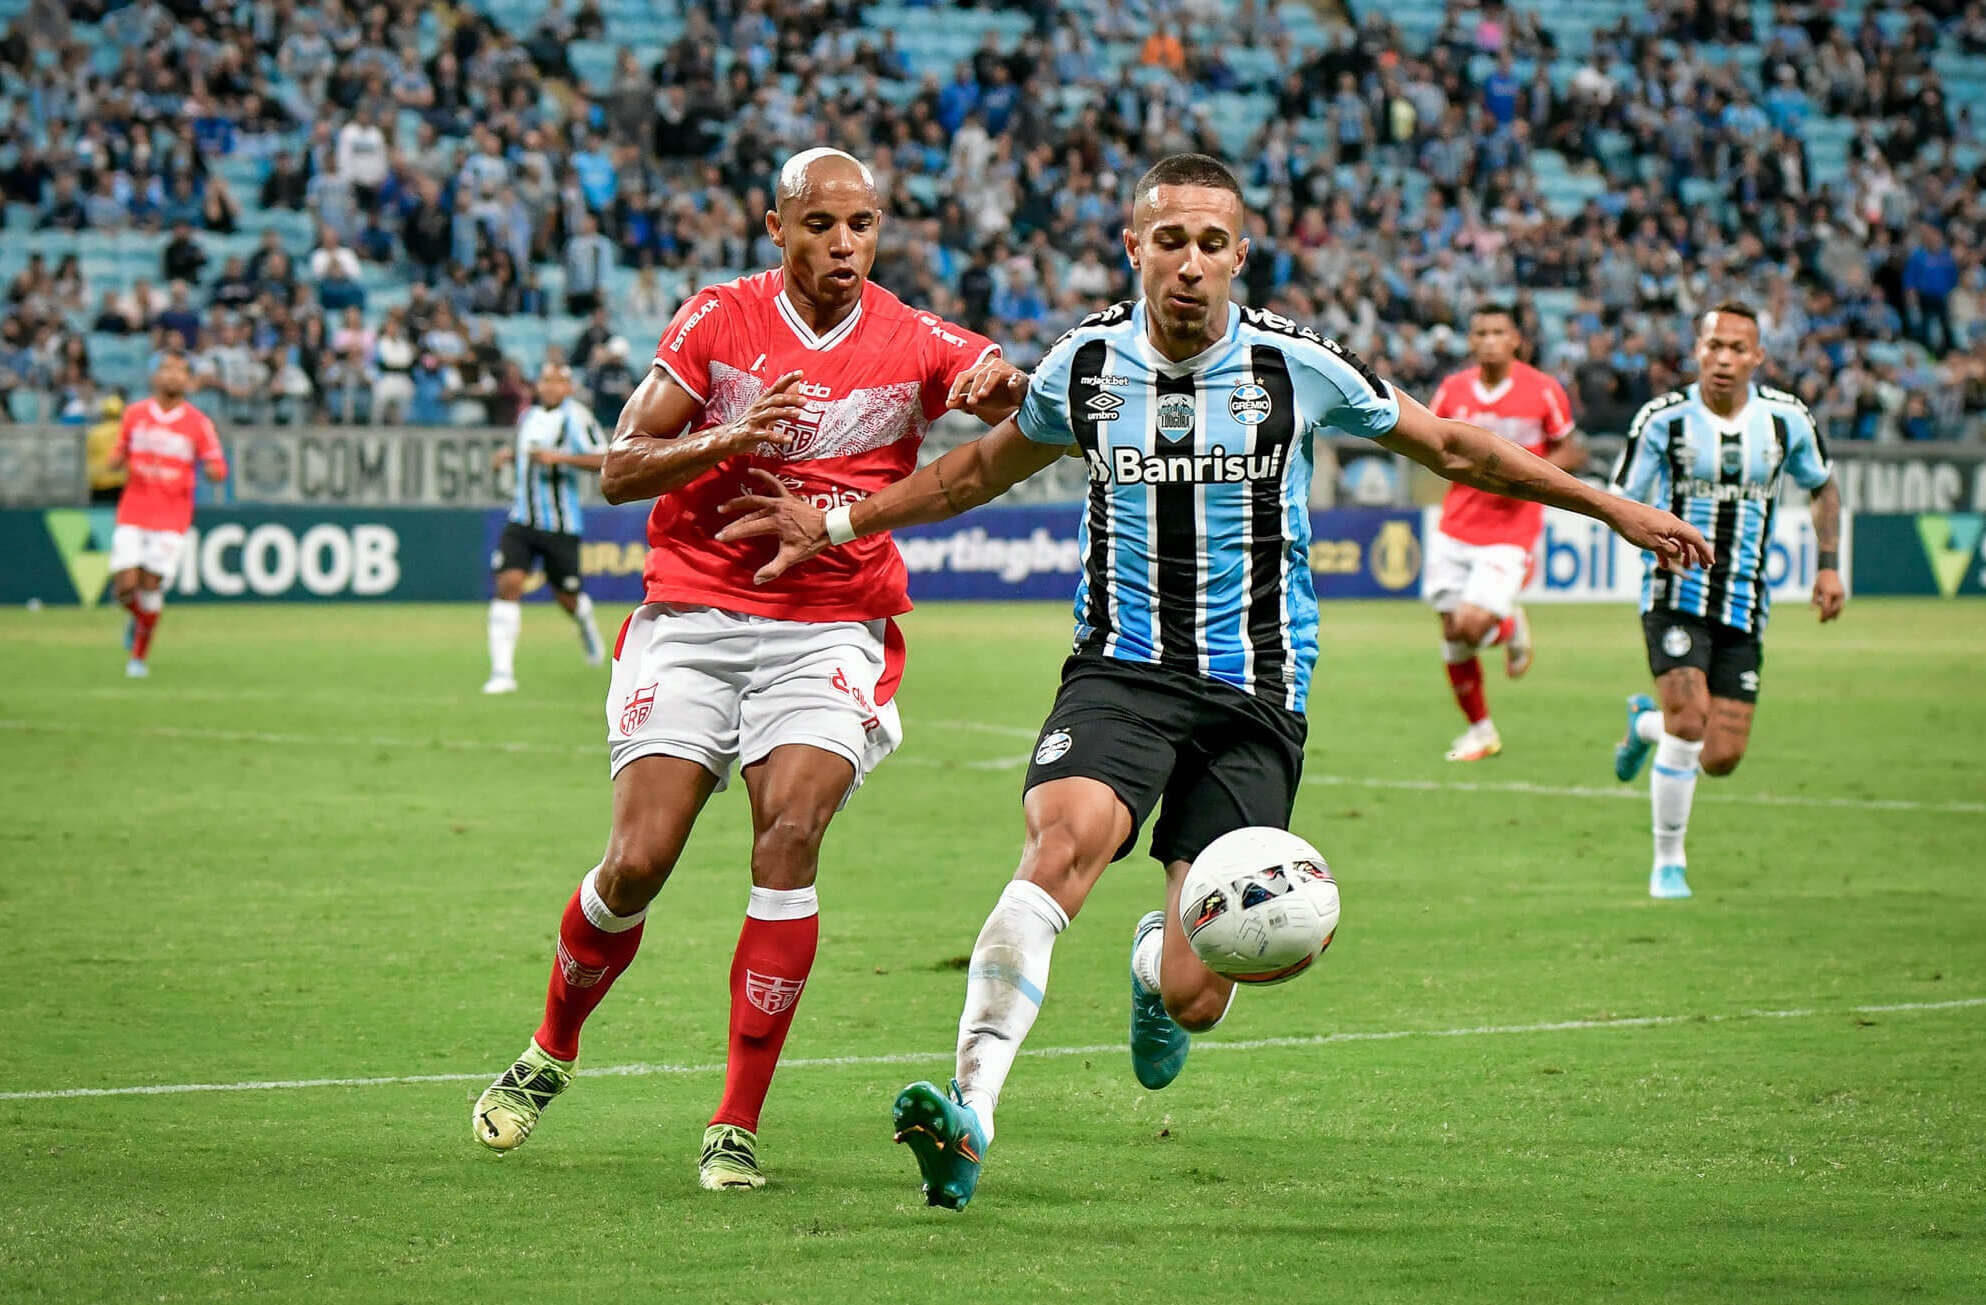 SÉRIE B: Grêmio assume a ponta, Cruzeiro chega ao G4 e Ponte se reabilita